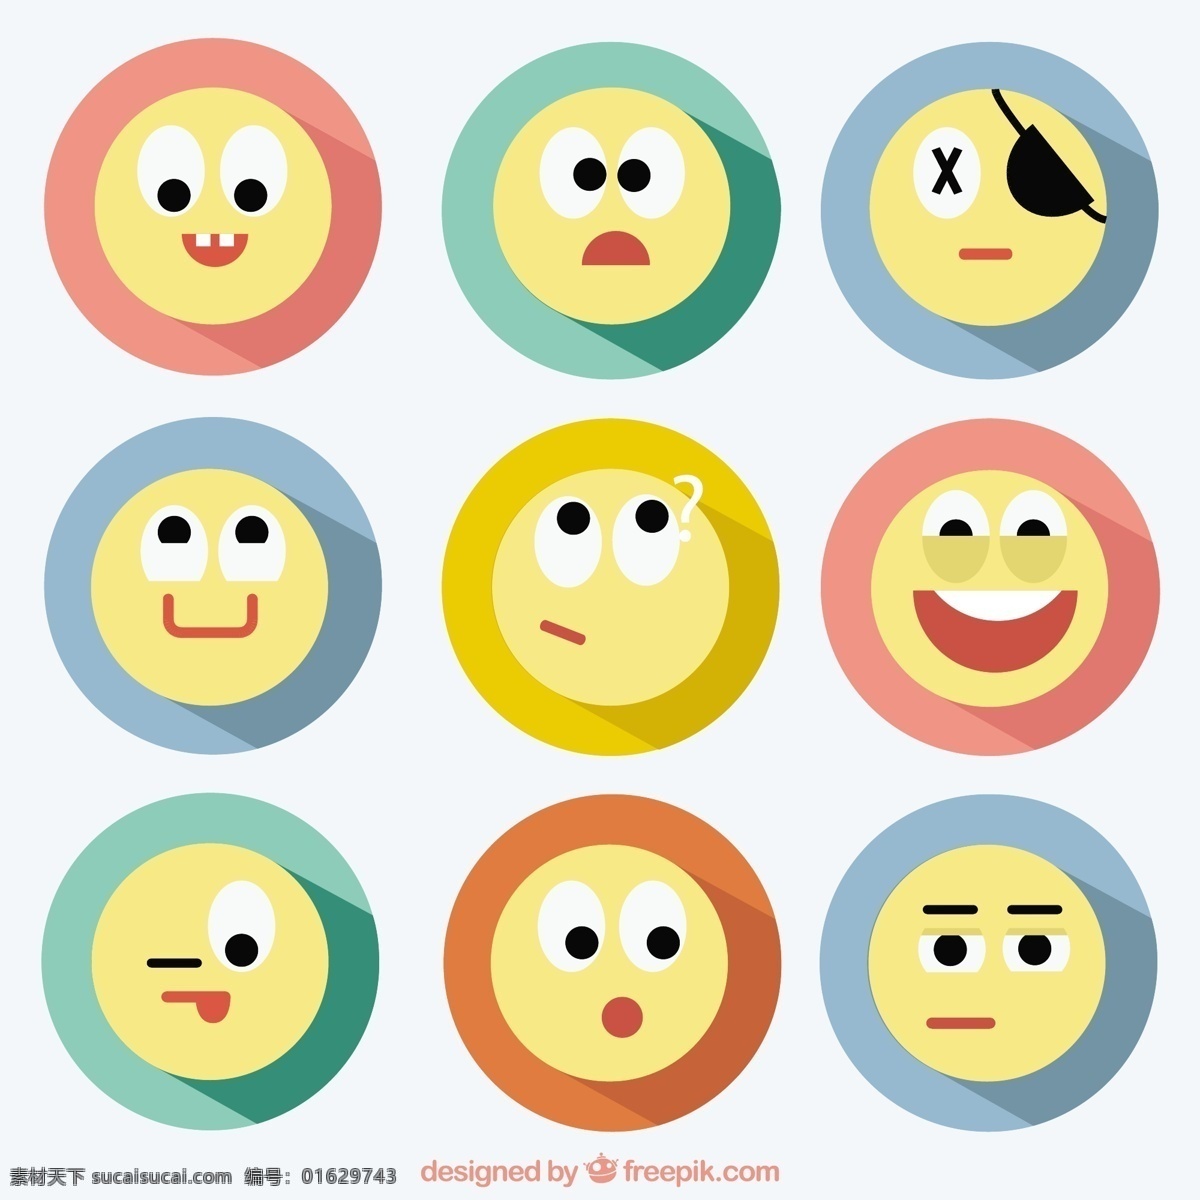 扁平化 风格 表情 图标 标签 微笑 面对 快乐 平淡 搞笑 扁平的图标 图标集 风格的脸 快乐的脸 表情符号 表达 困惑 收集 白色